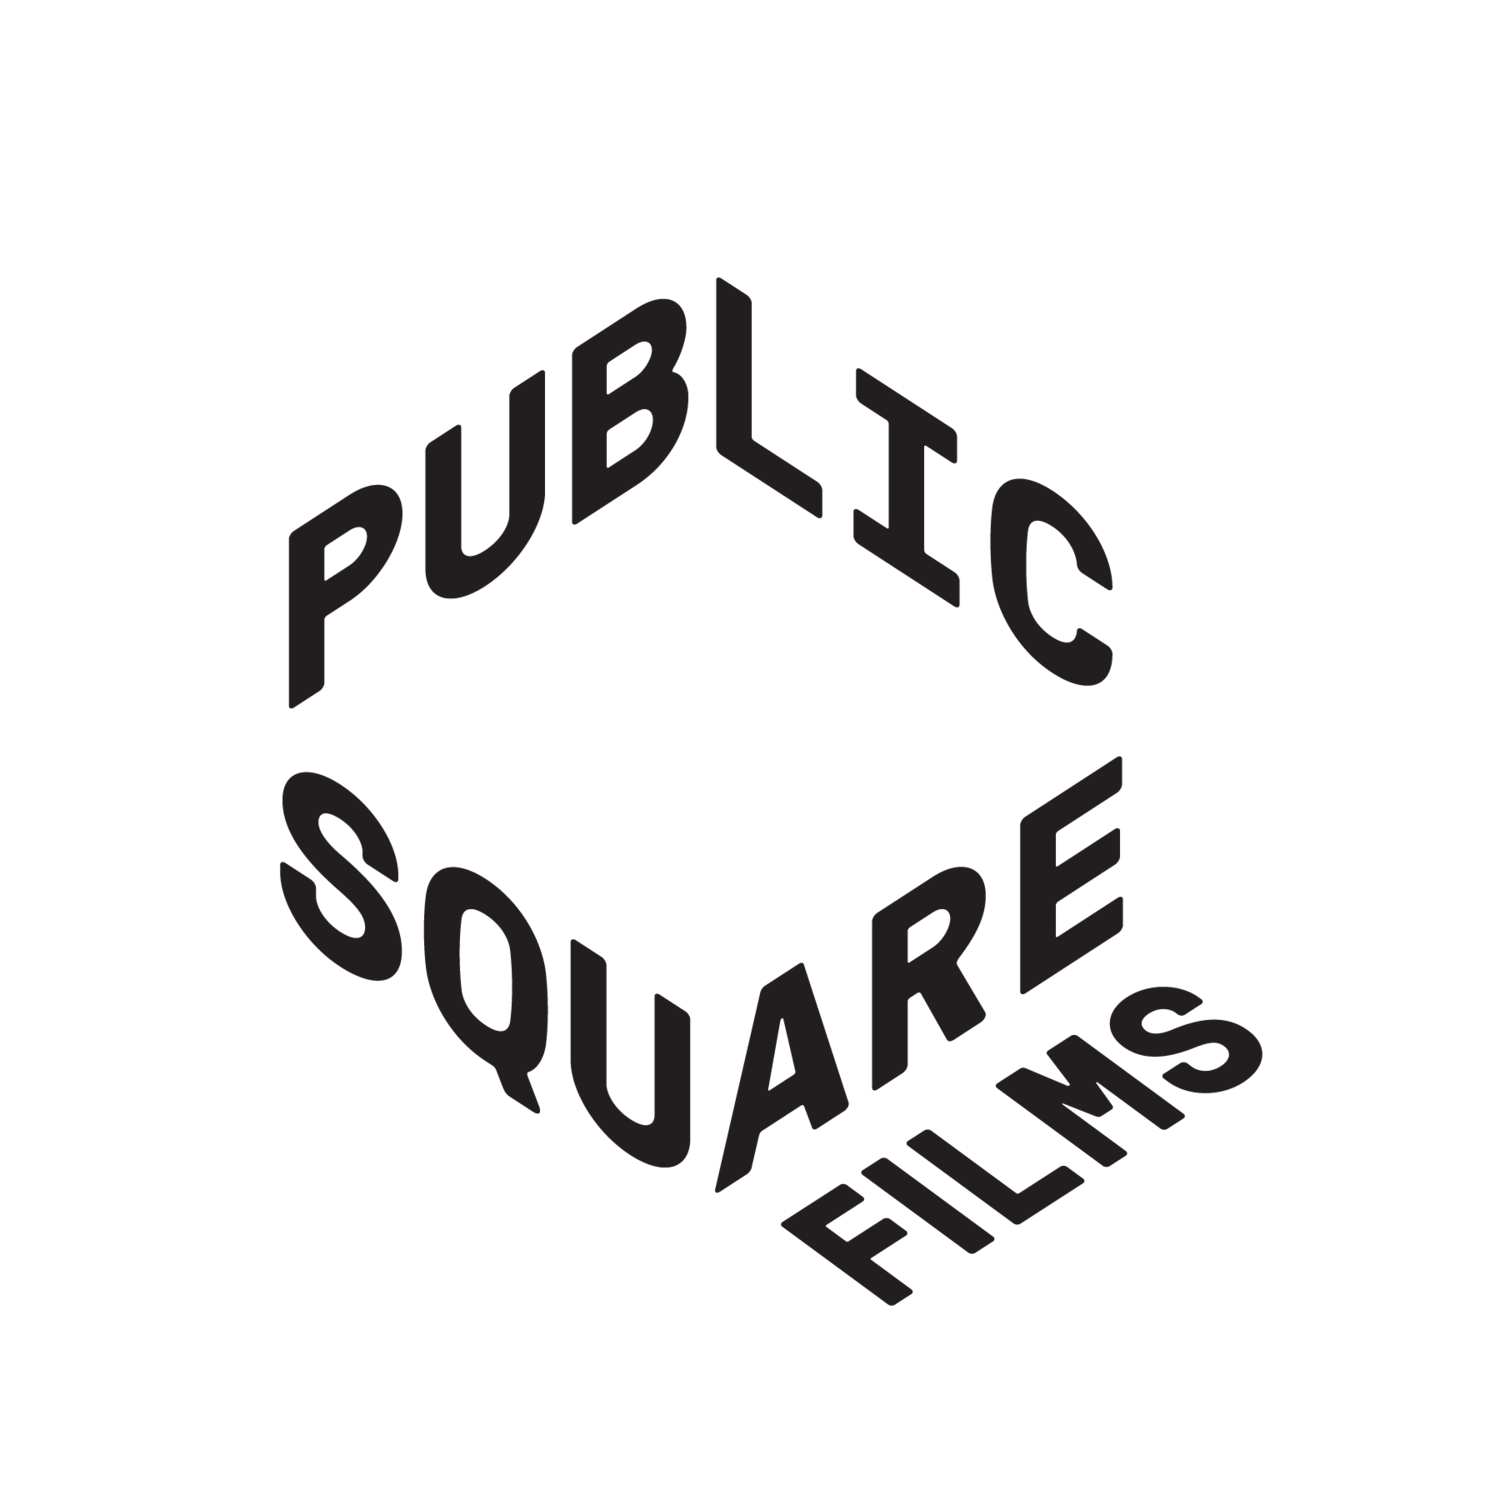 Public Square Films